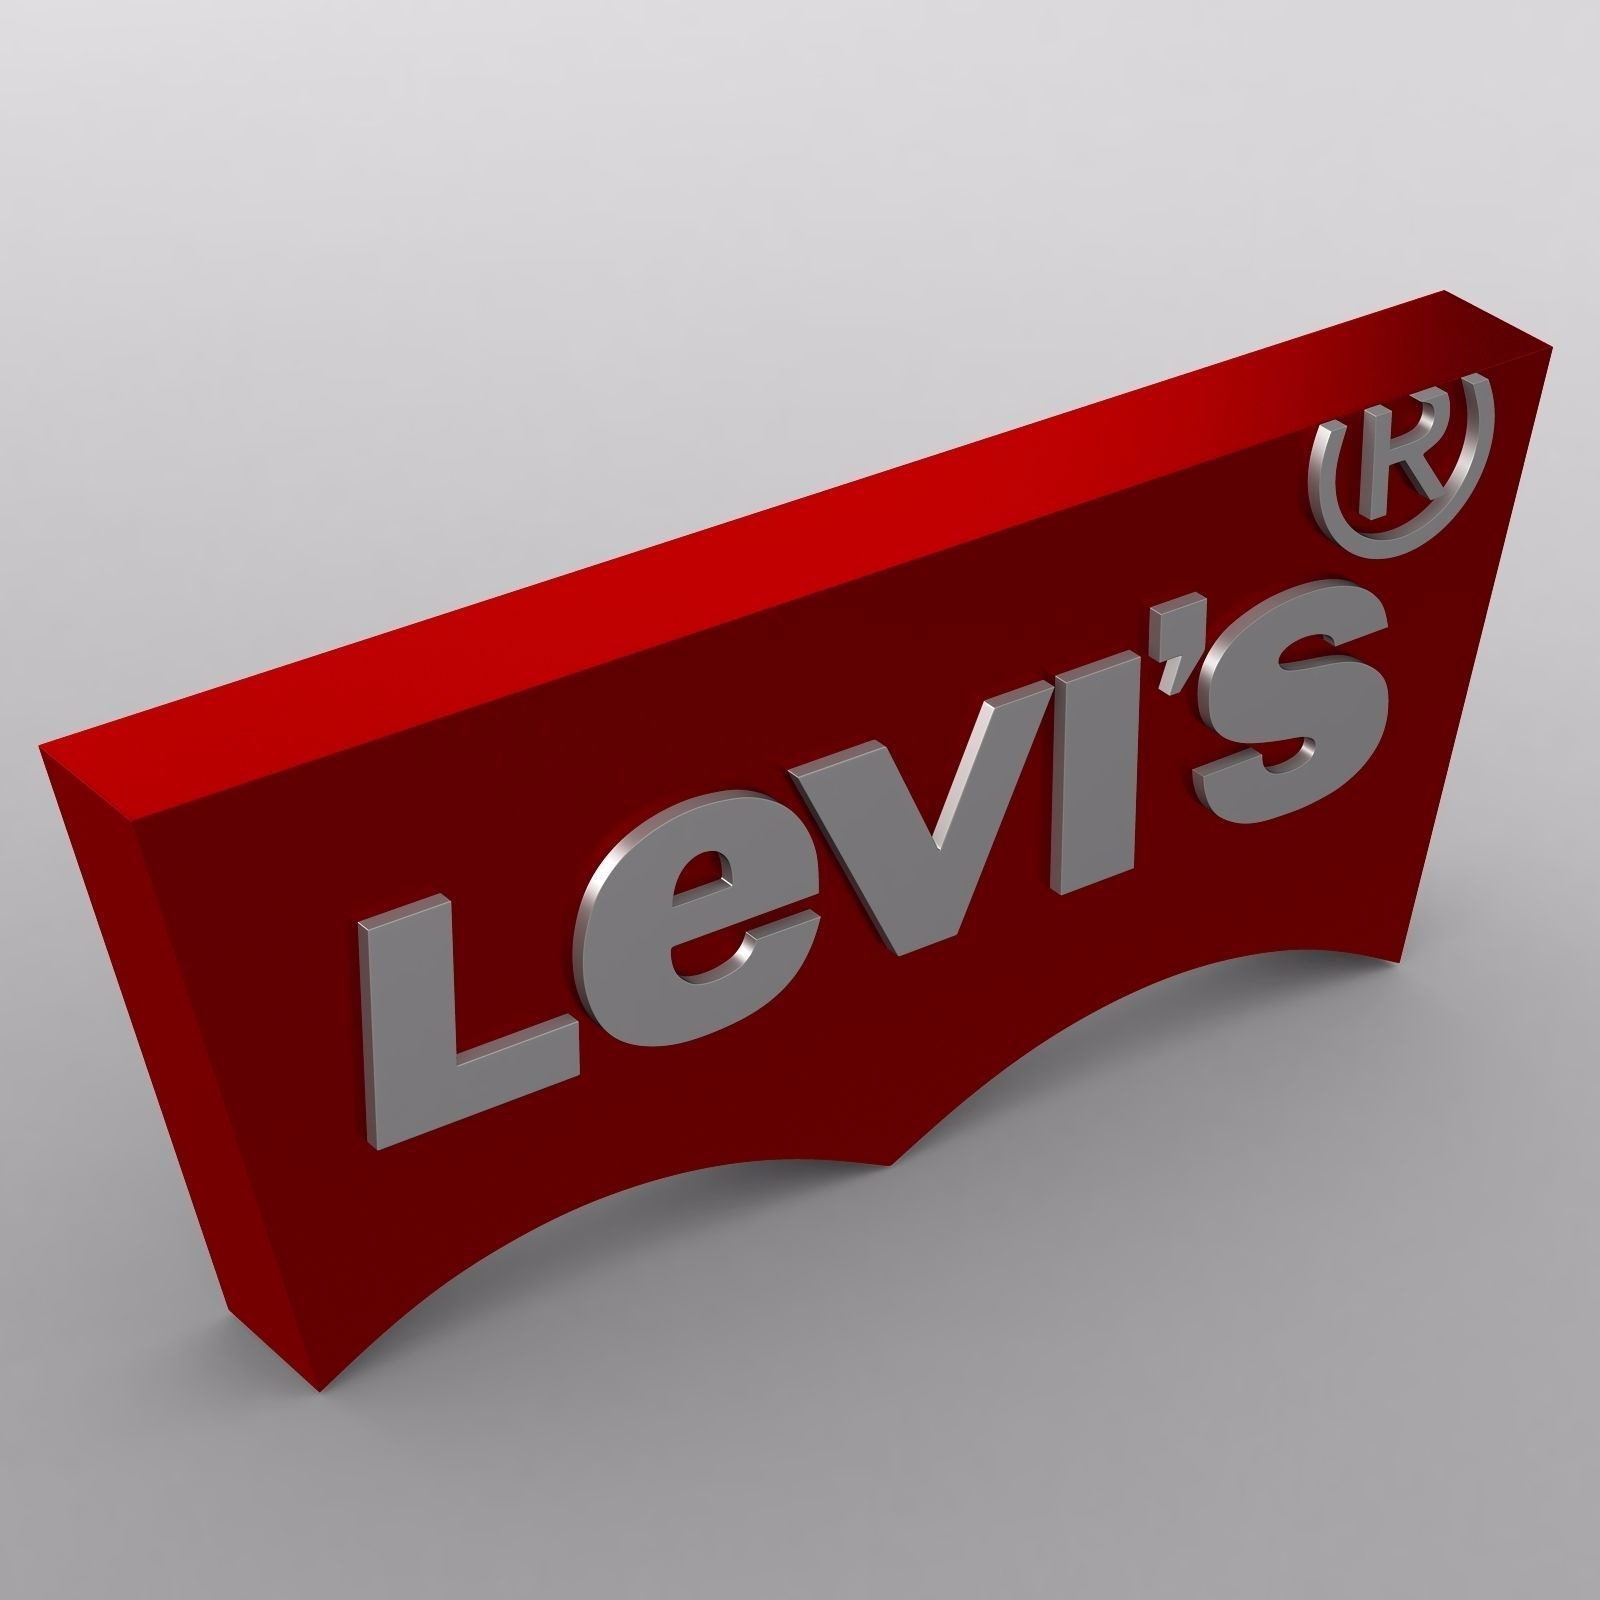 levis-logo-3d-model-obj-mtl-3ds-fbx-c4d-lwo-lw-lws-ma-mb.jpg